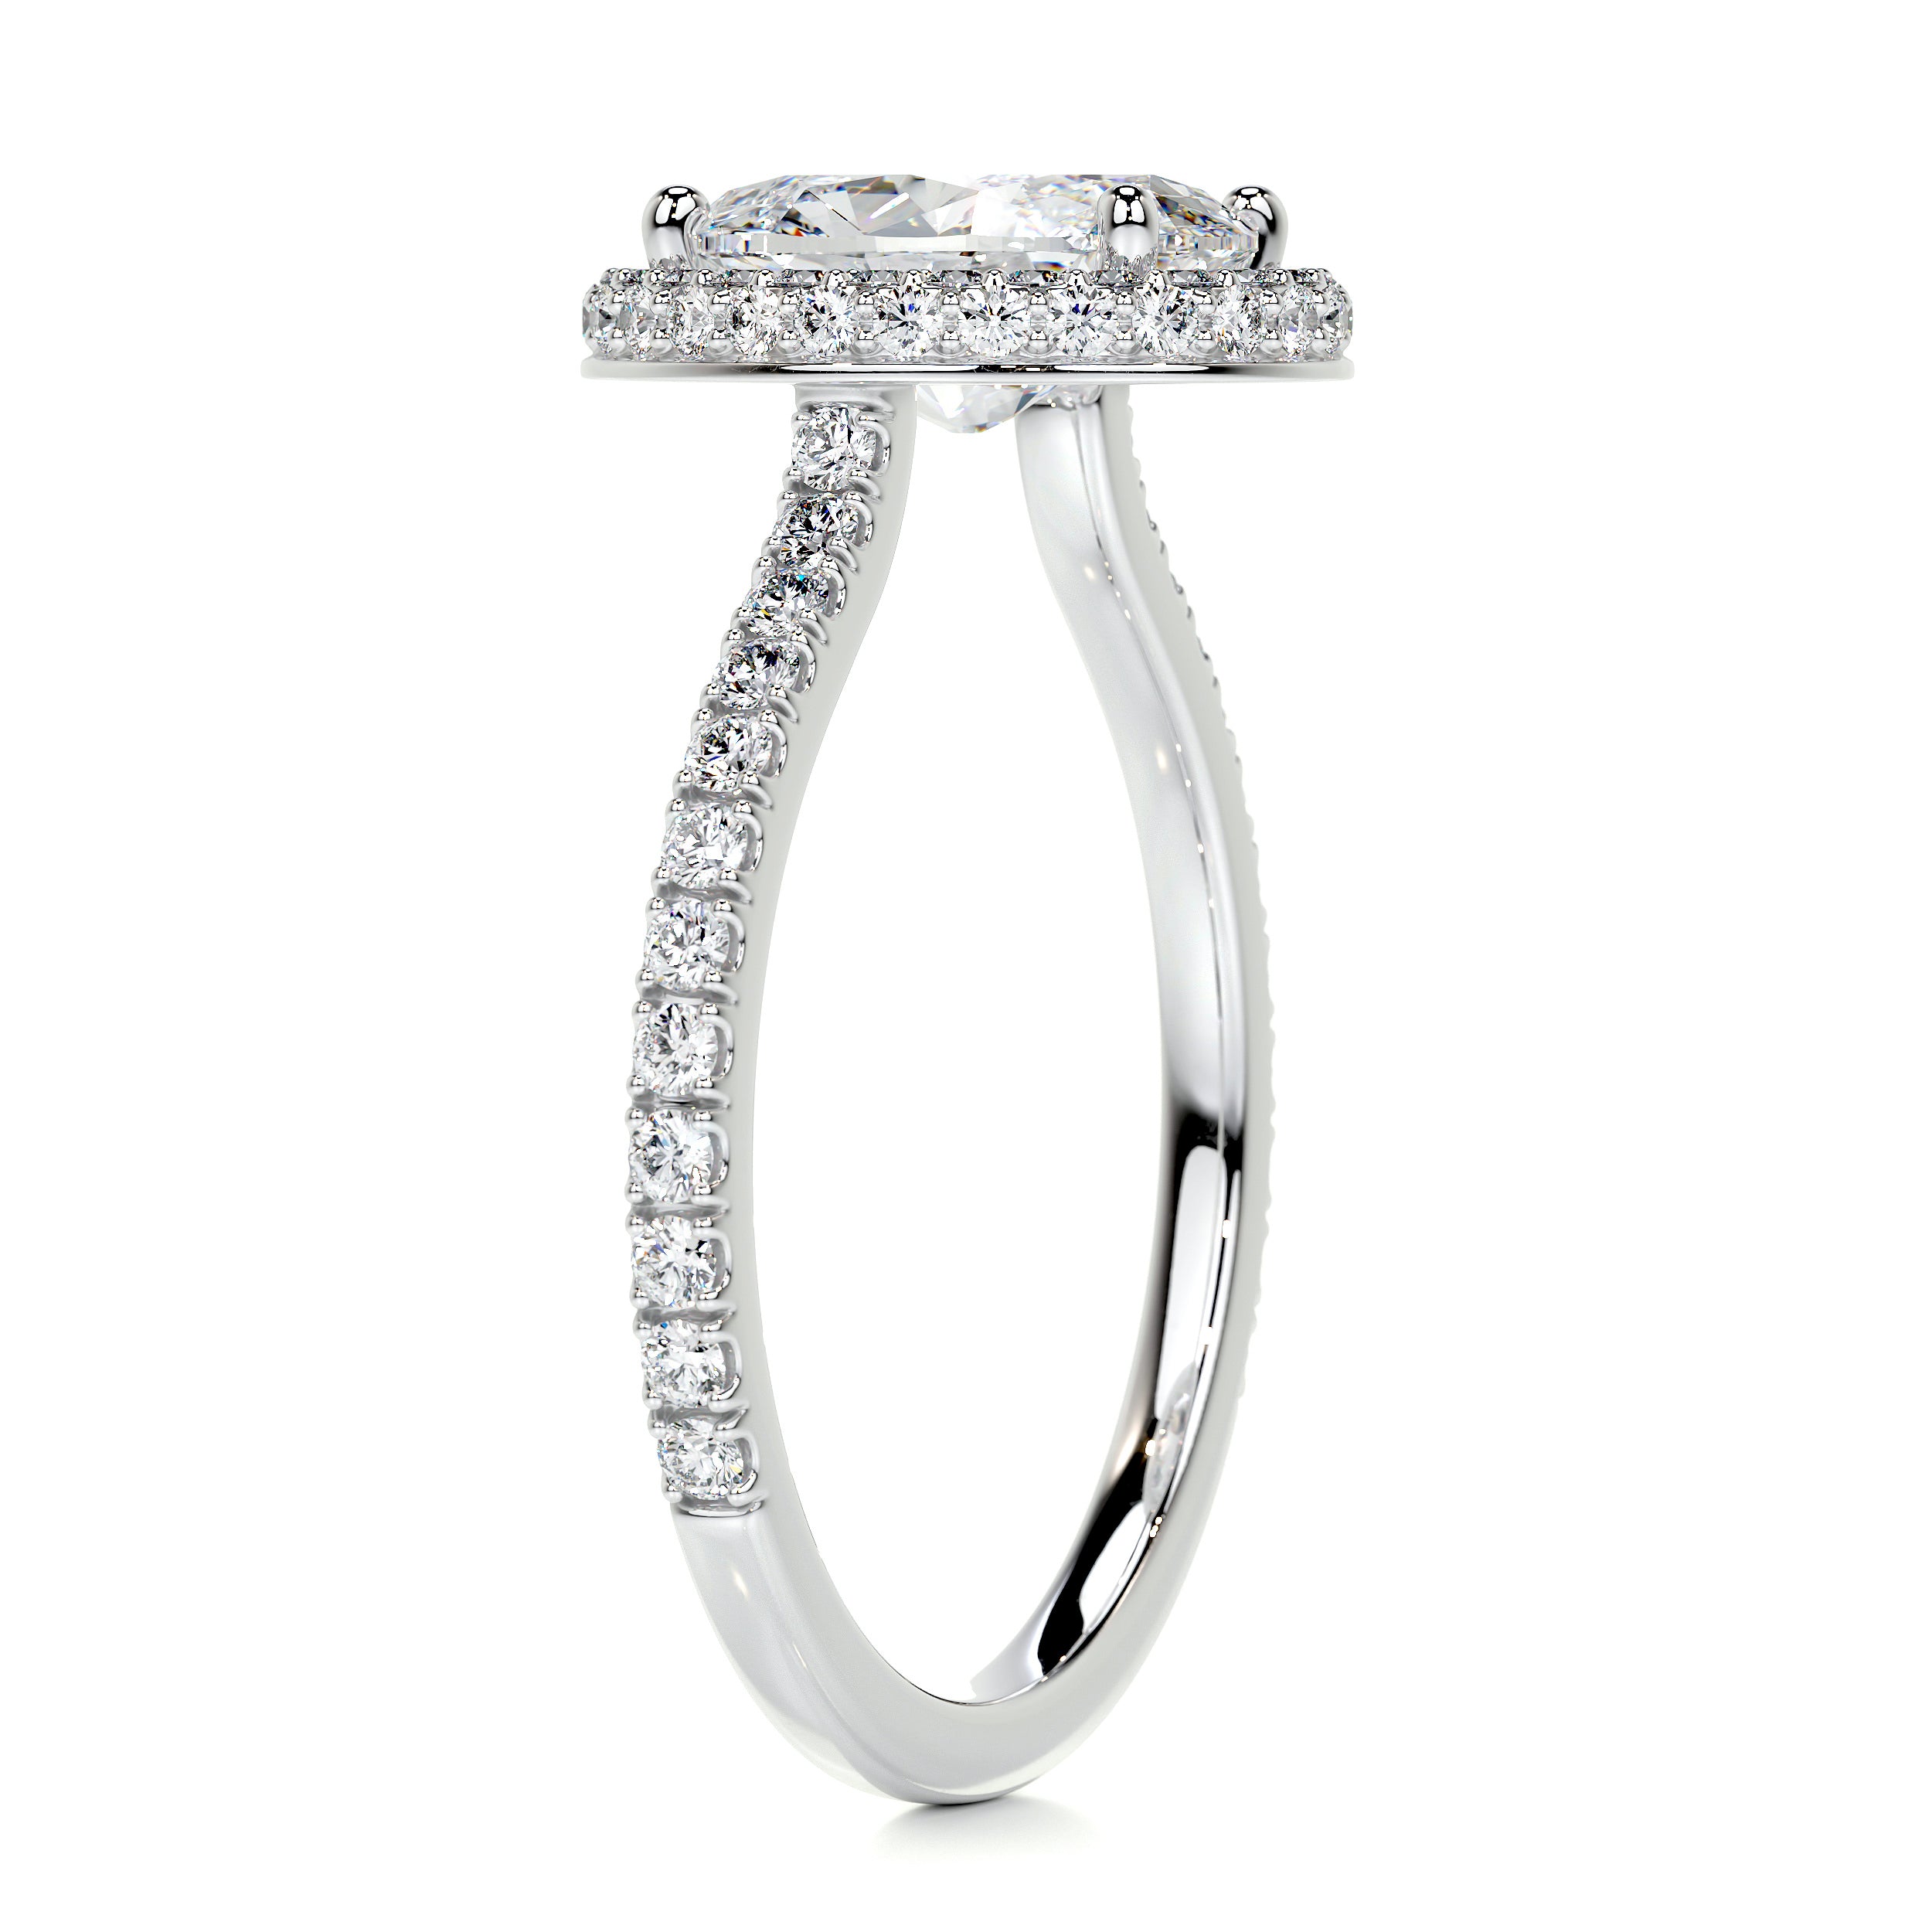 Parker Diamond Engagement Ring -14K White Gold